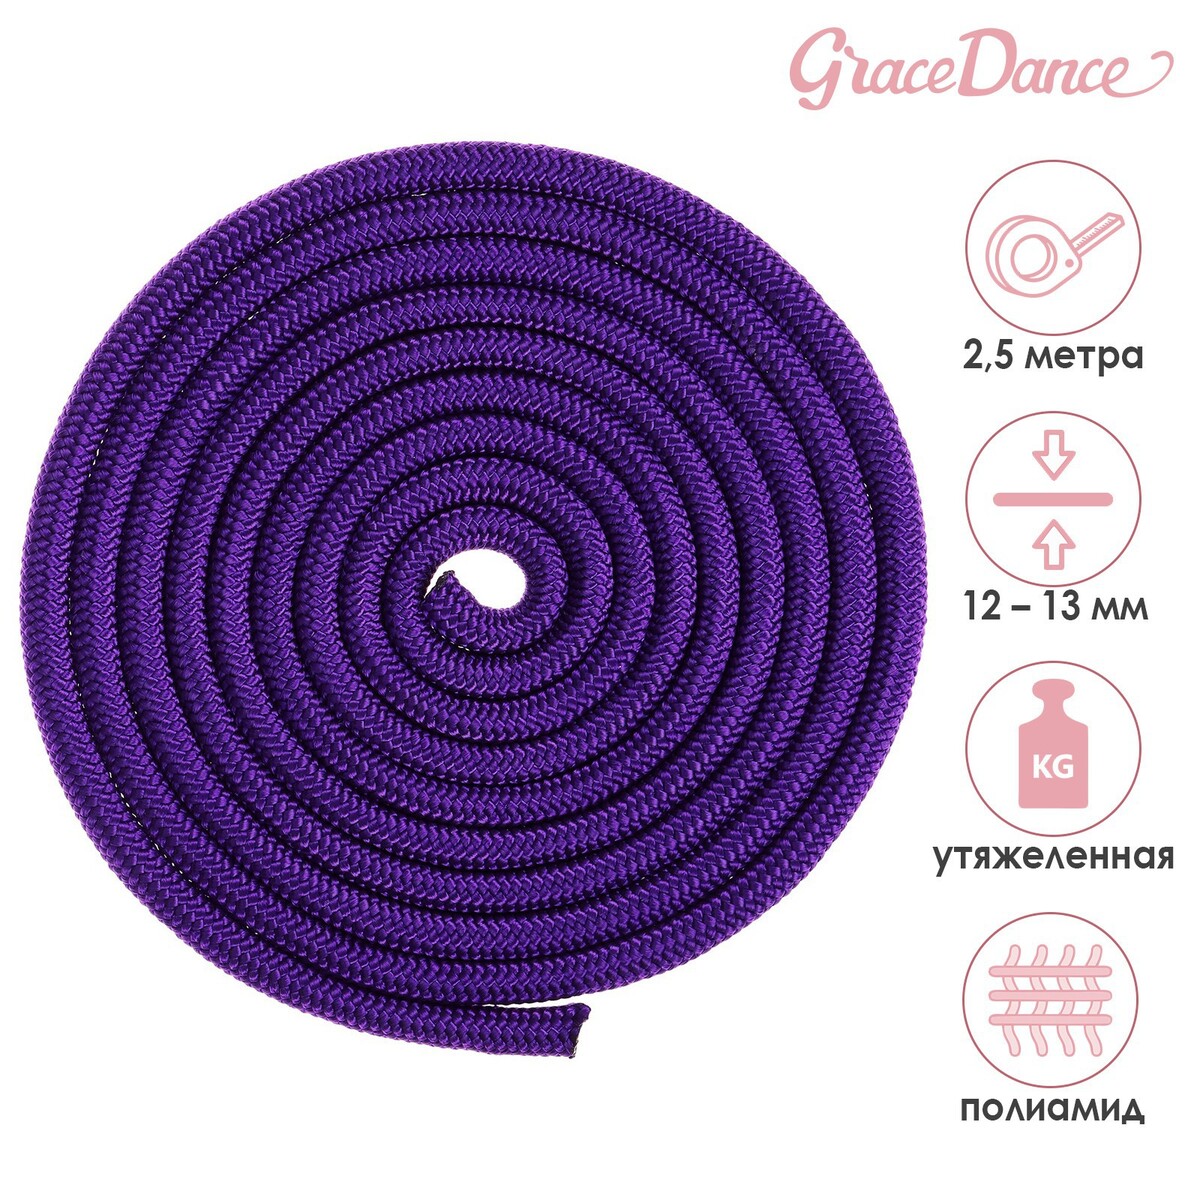 Скакалка для художественной гимнастики утяжеленная grace dance, 2,5 м, цвет фиолетовый